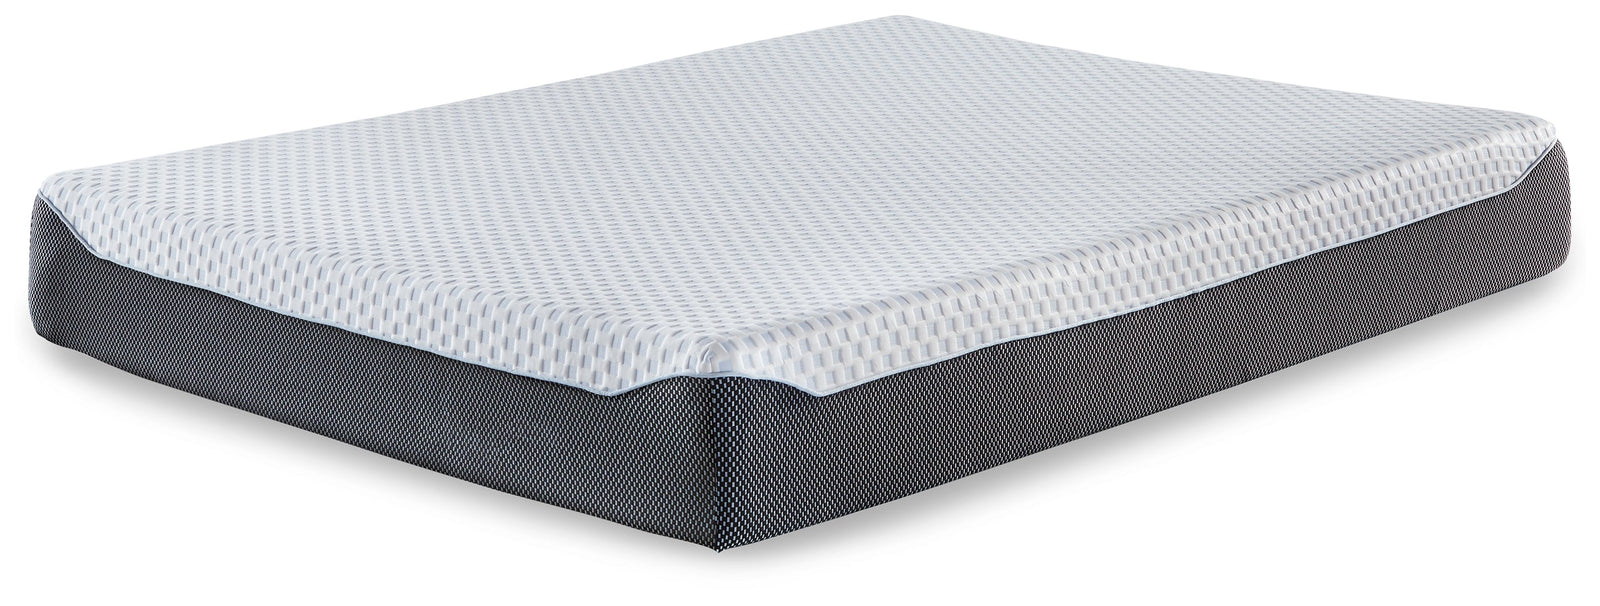 10 Inch Chime Elite White/blue Full Memory Foam Mattress In A Box